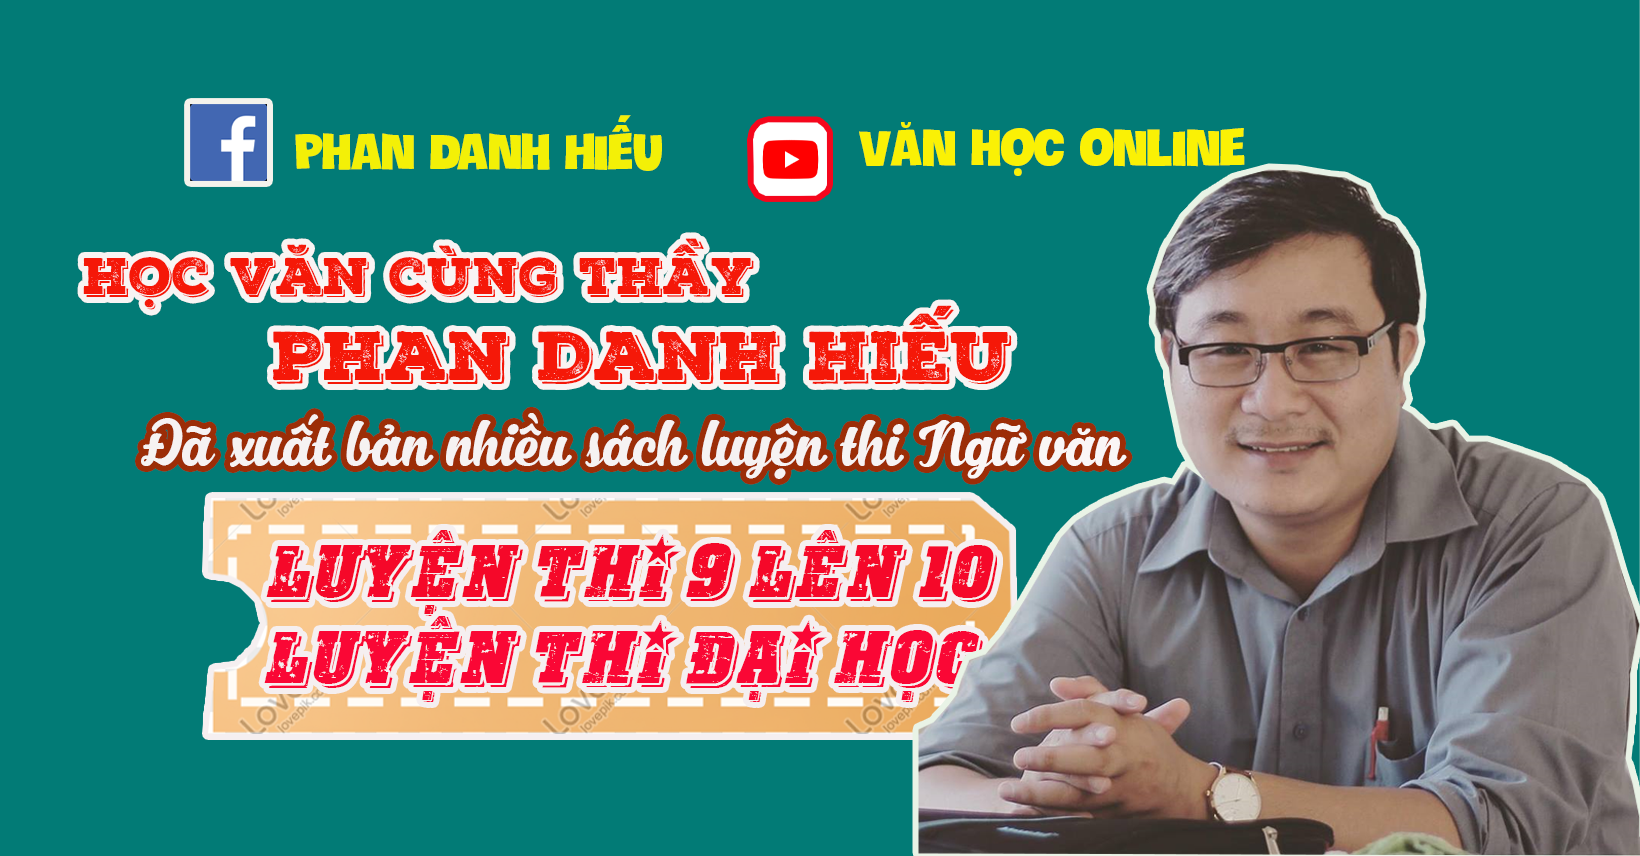 COMBO KHOÁ VĂN ĐẢM BẢO 7+, 8+, 9+ TRỞ LÊN 2018 THẦY PHAN DANH HIẾU - TAILIEUONTHI.NET